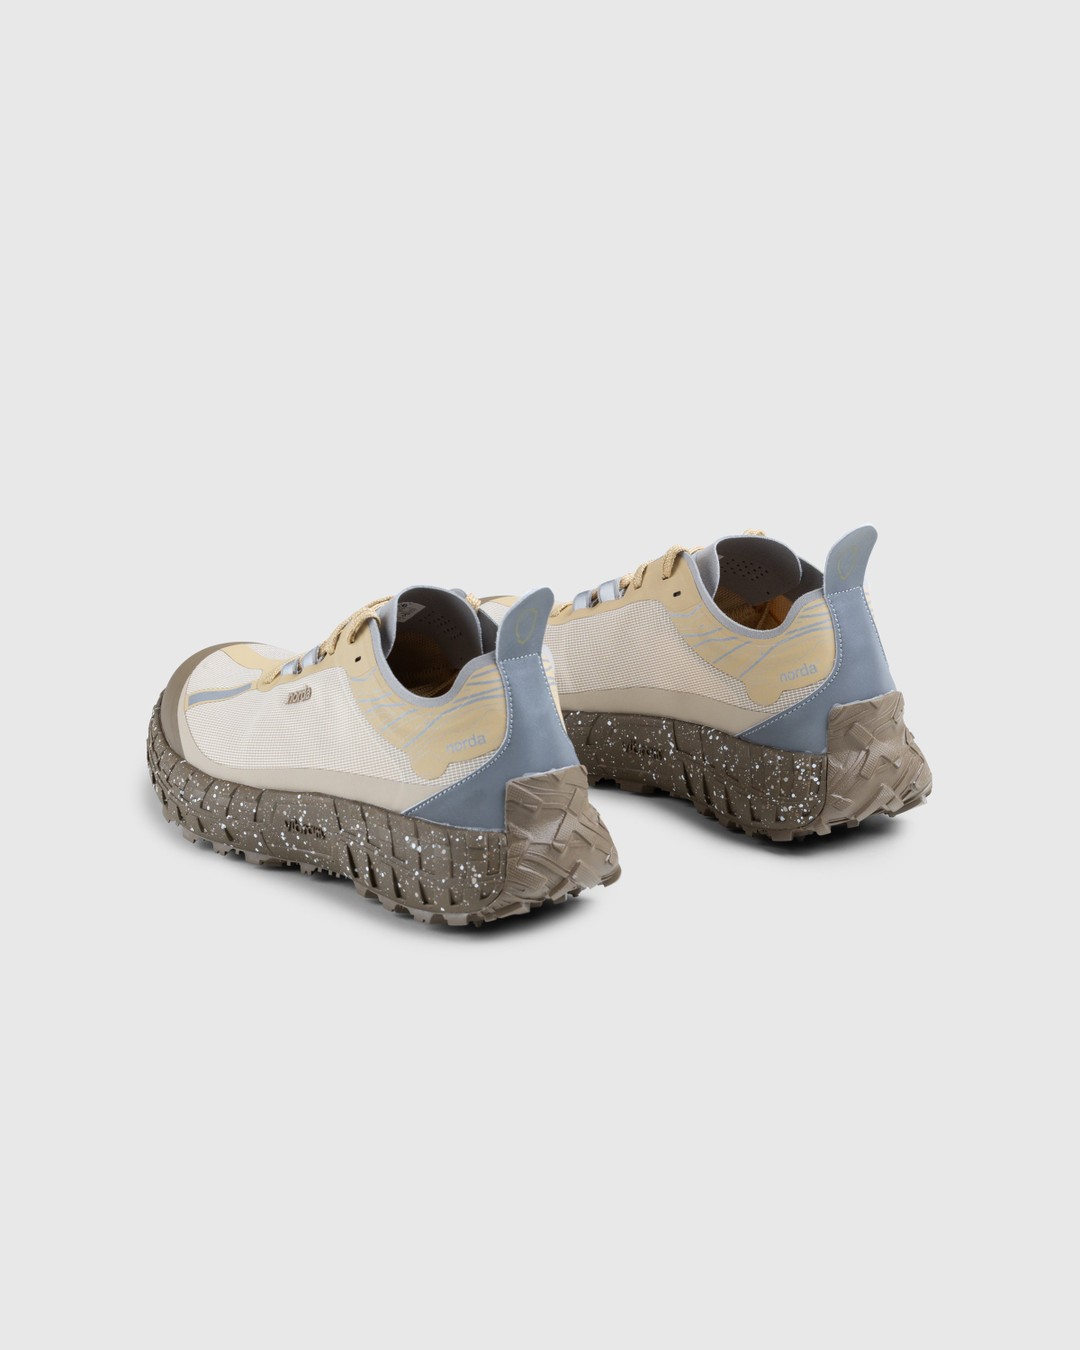 Norda – 001 M Regolith Brown - Sneakers - Brown - Image 4